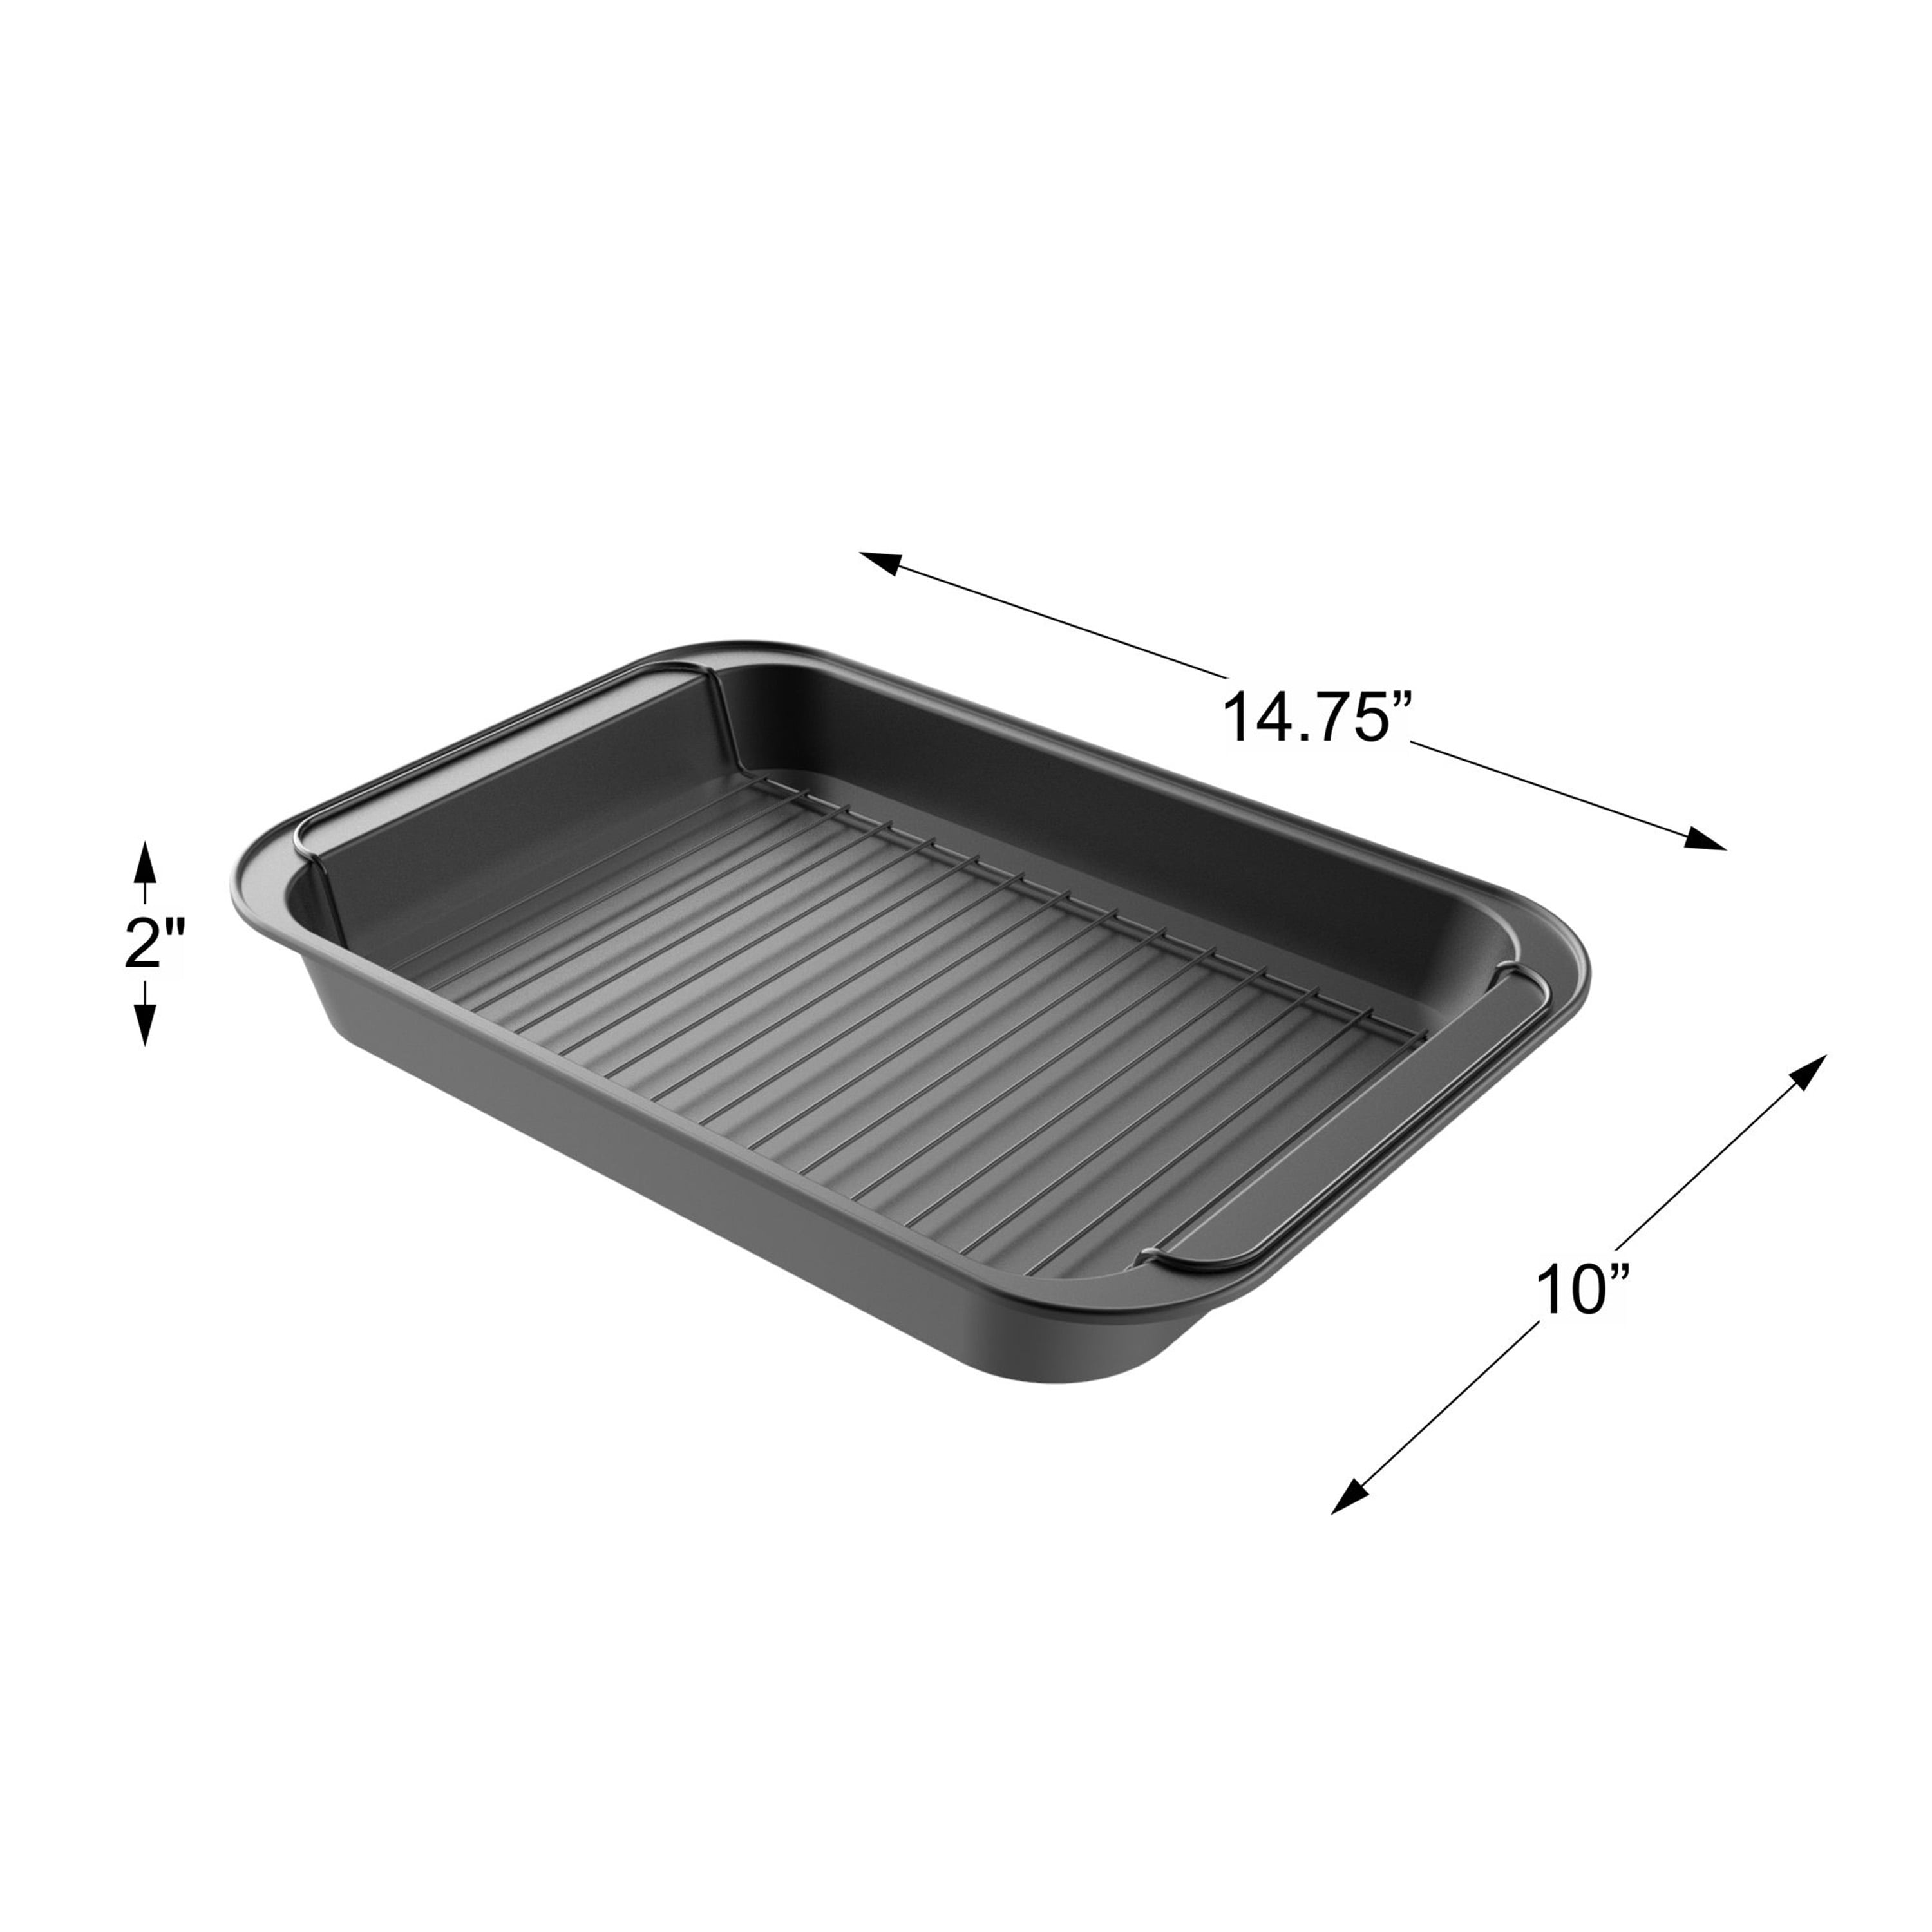 2 x Non Stick Oven Baking Roasting Roaster Tin Tray Pan 